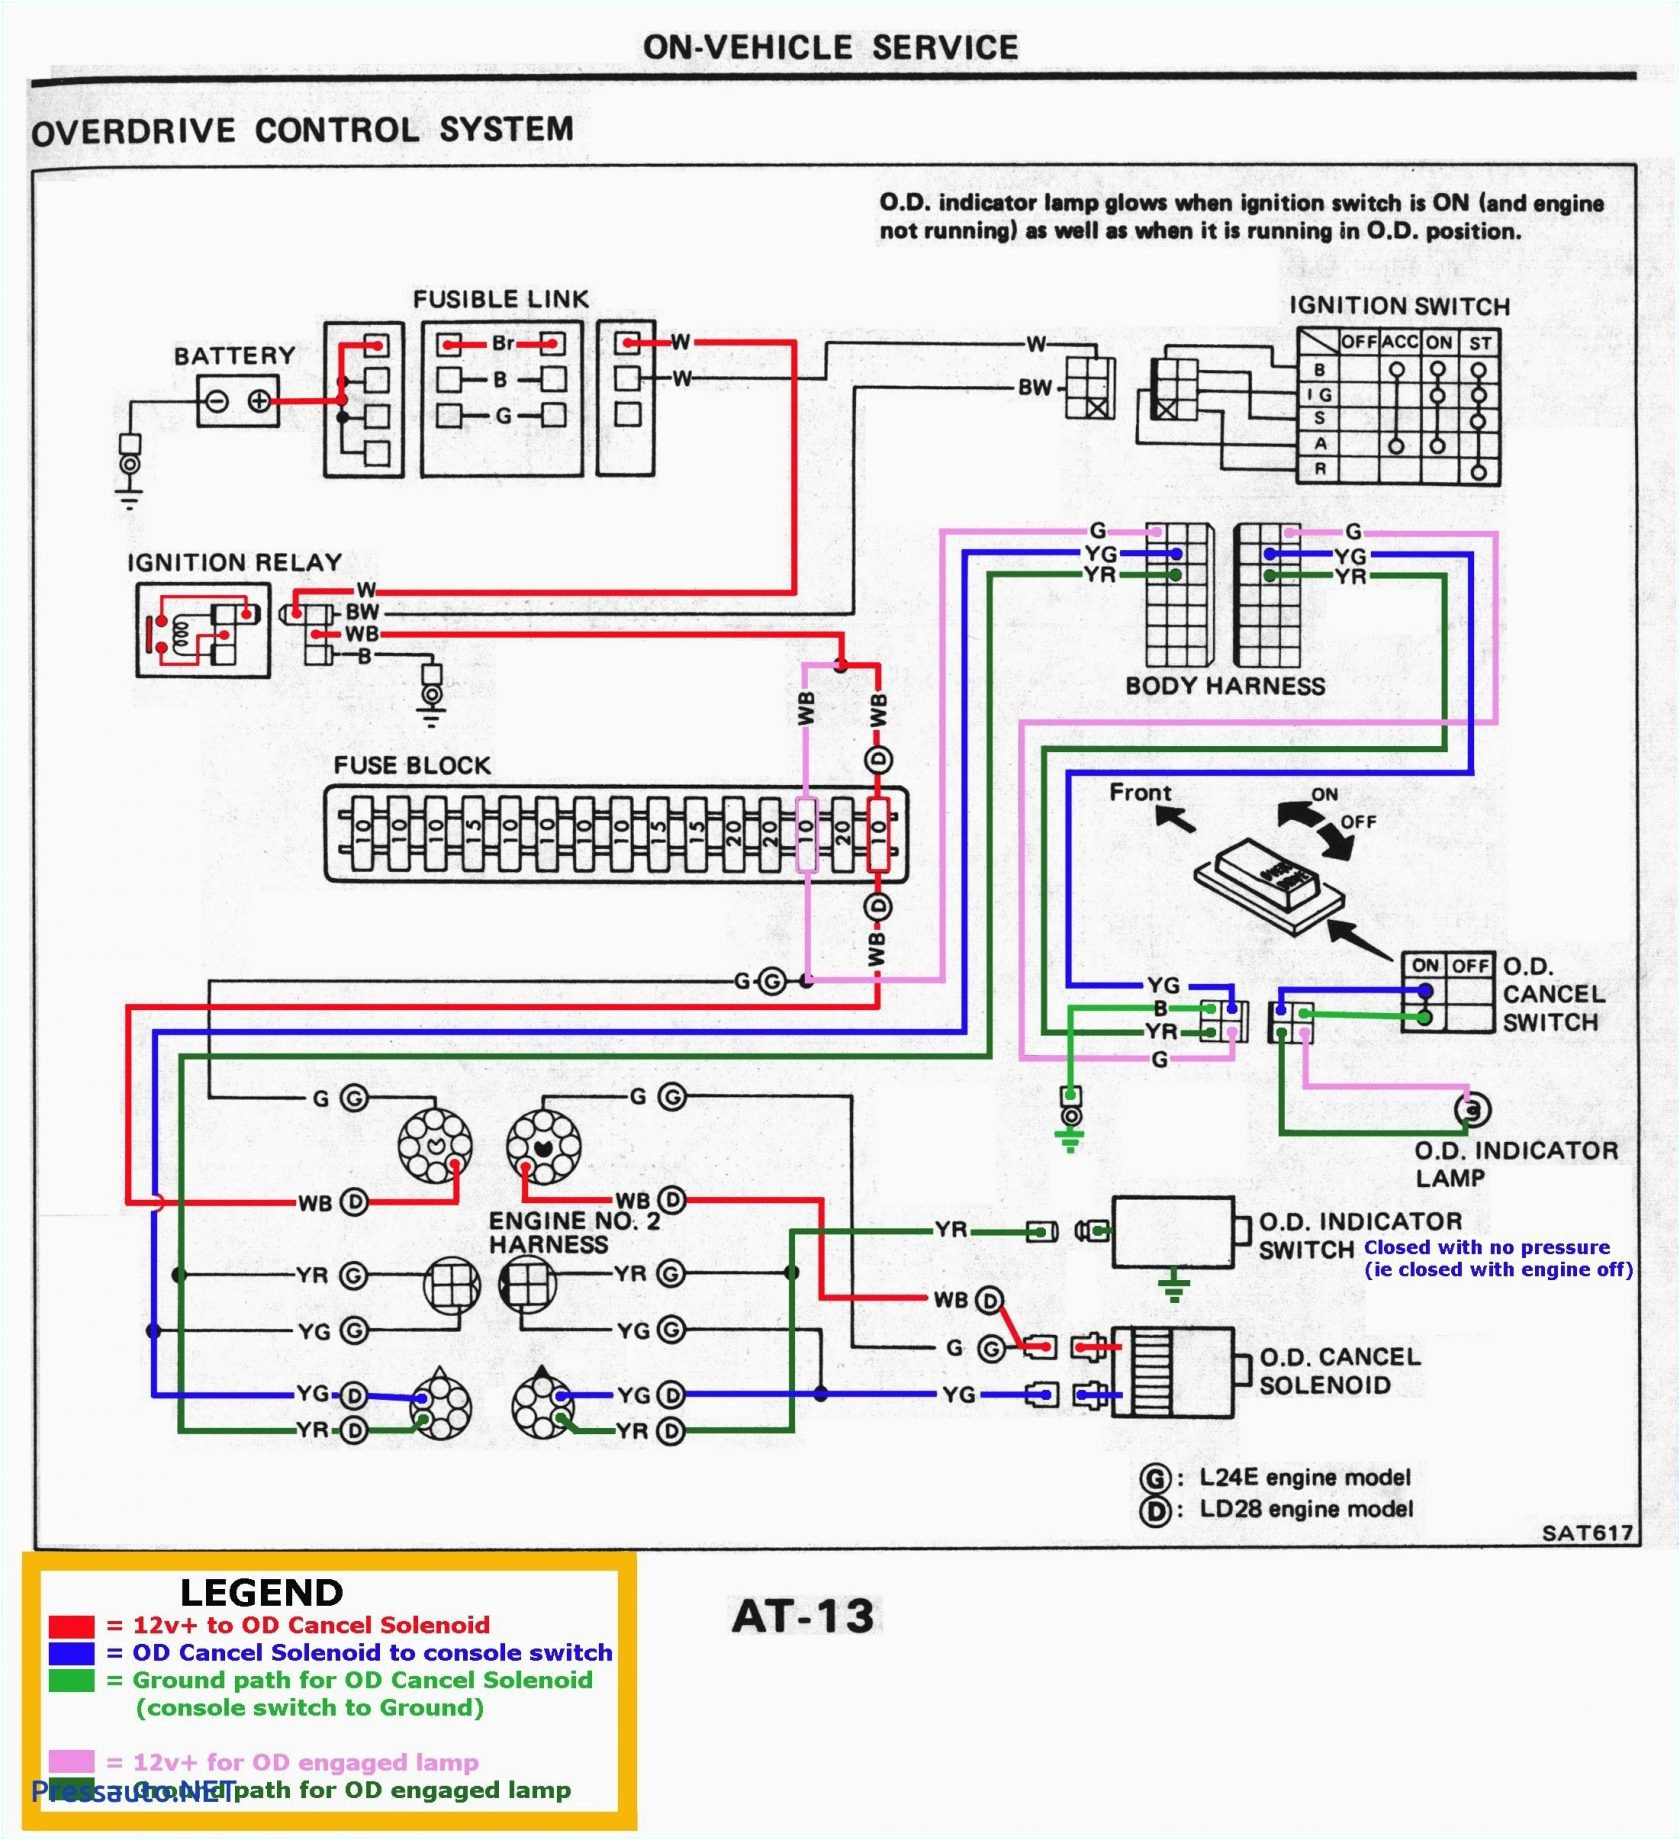 schematic wiring diagram ach 088 wiring diagram user ach wiring diagram model 8